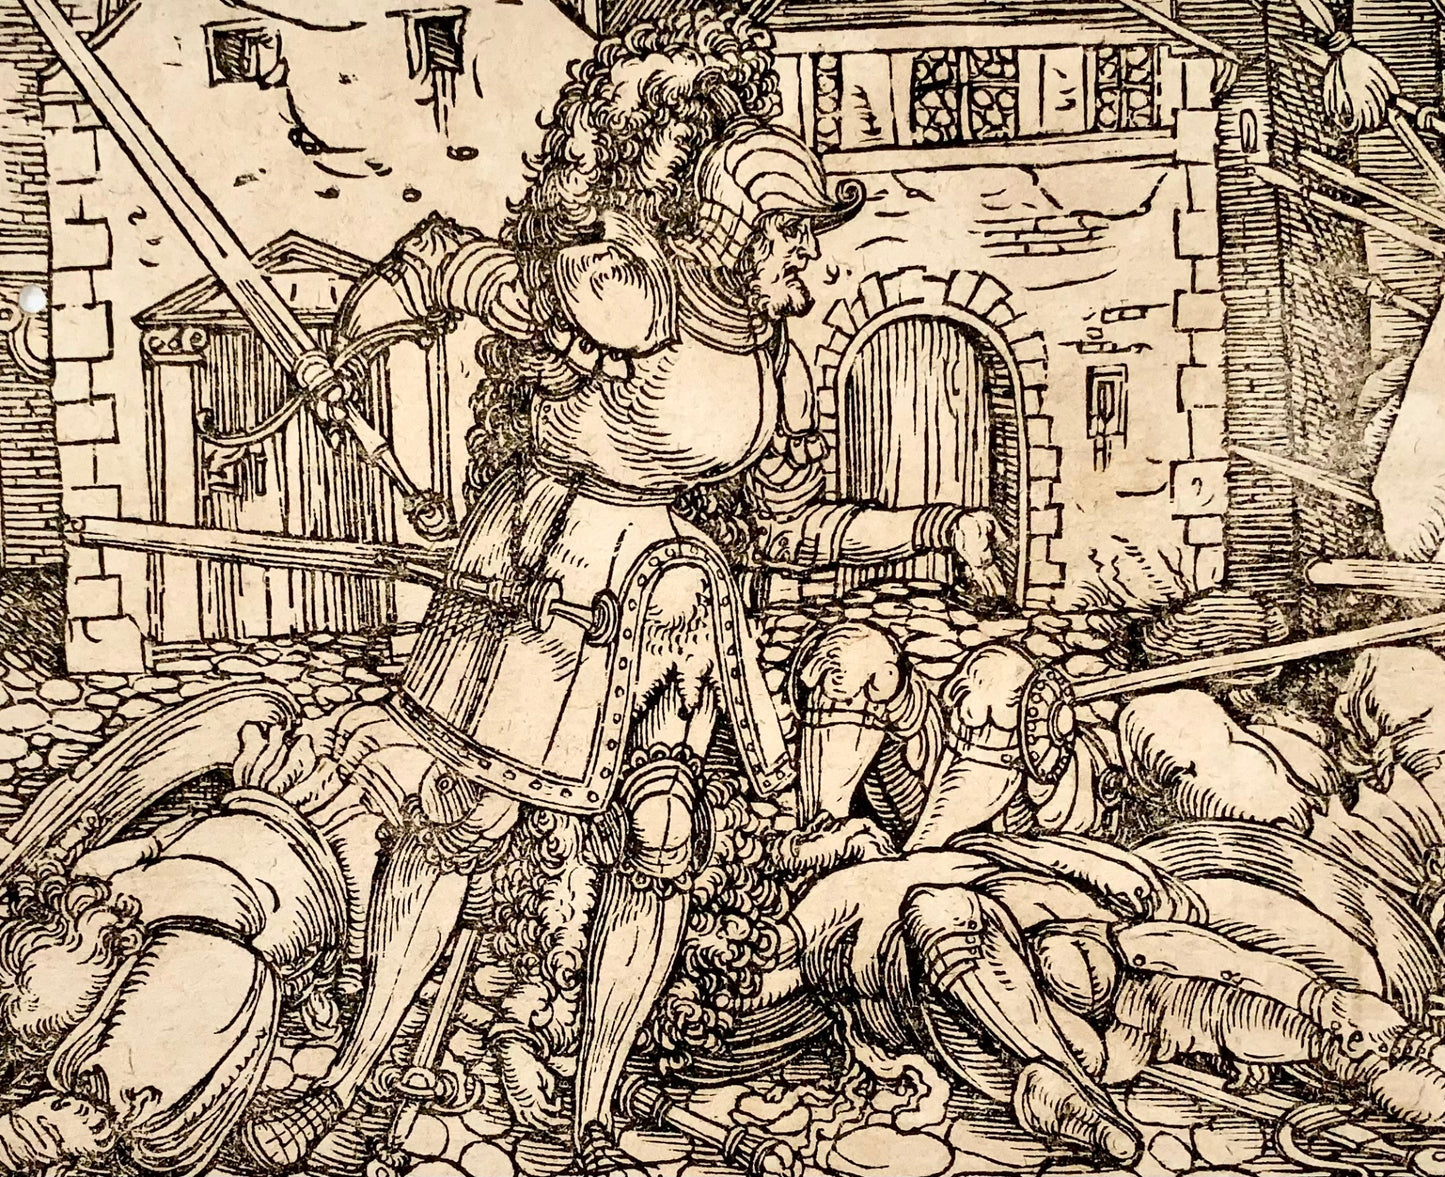 1532 Hans Weiditz, Battaglia con / Morte di un nemico, 2 xilografie magistrali